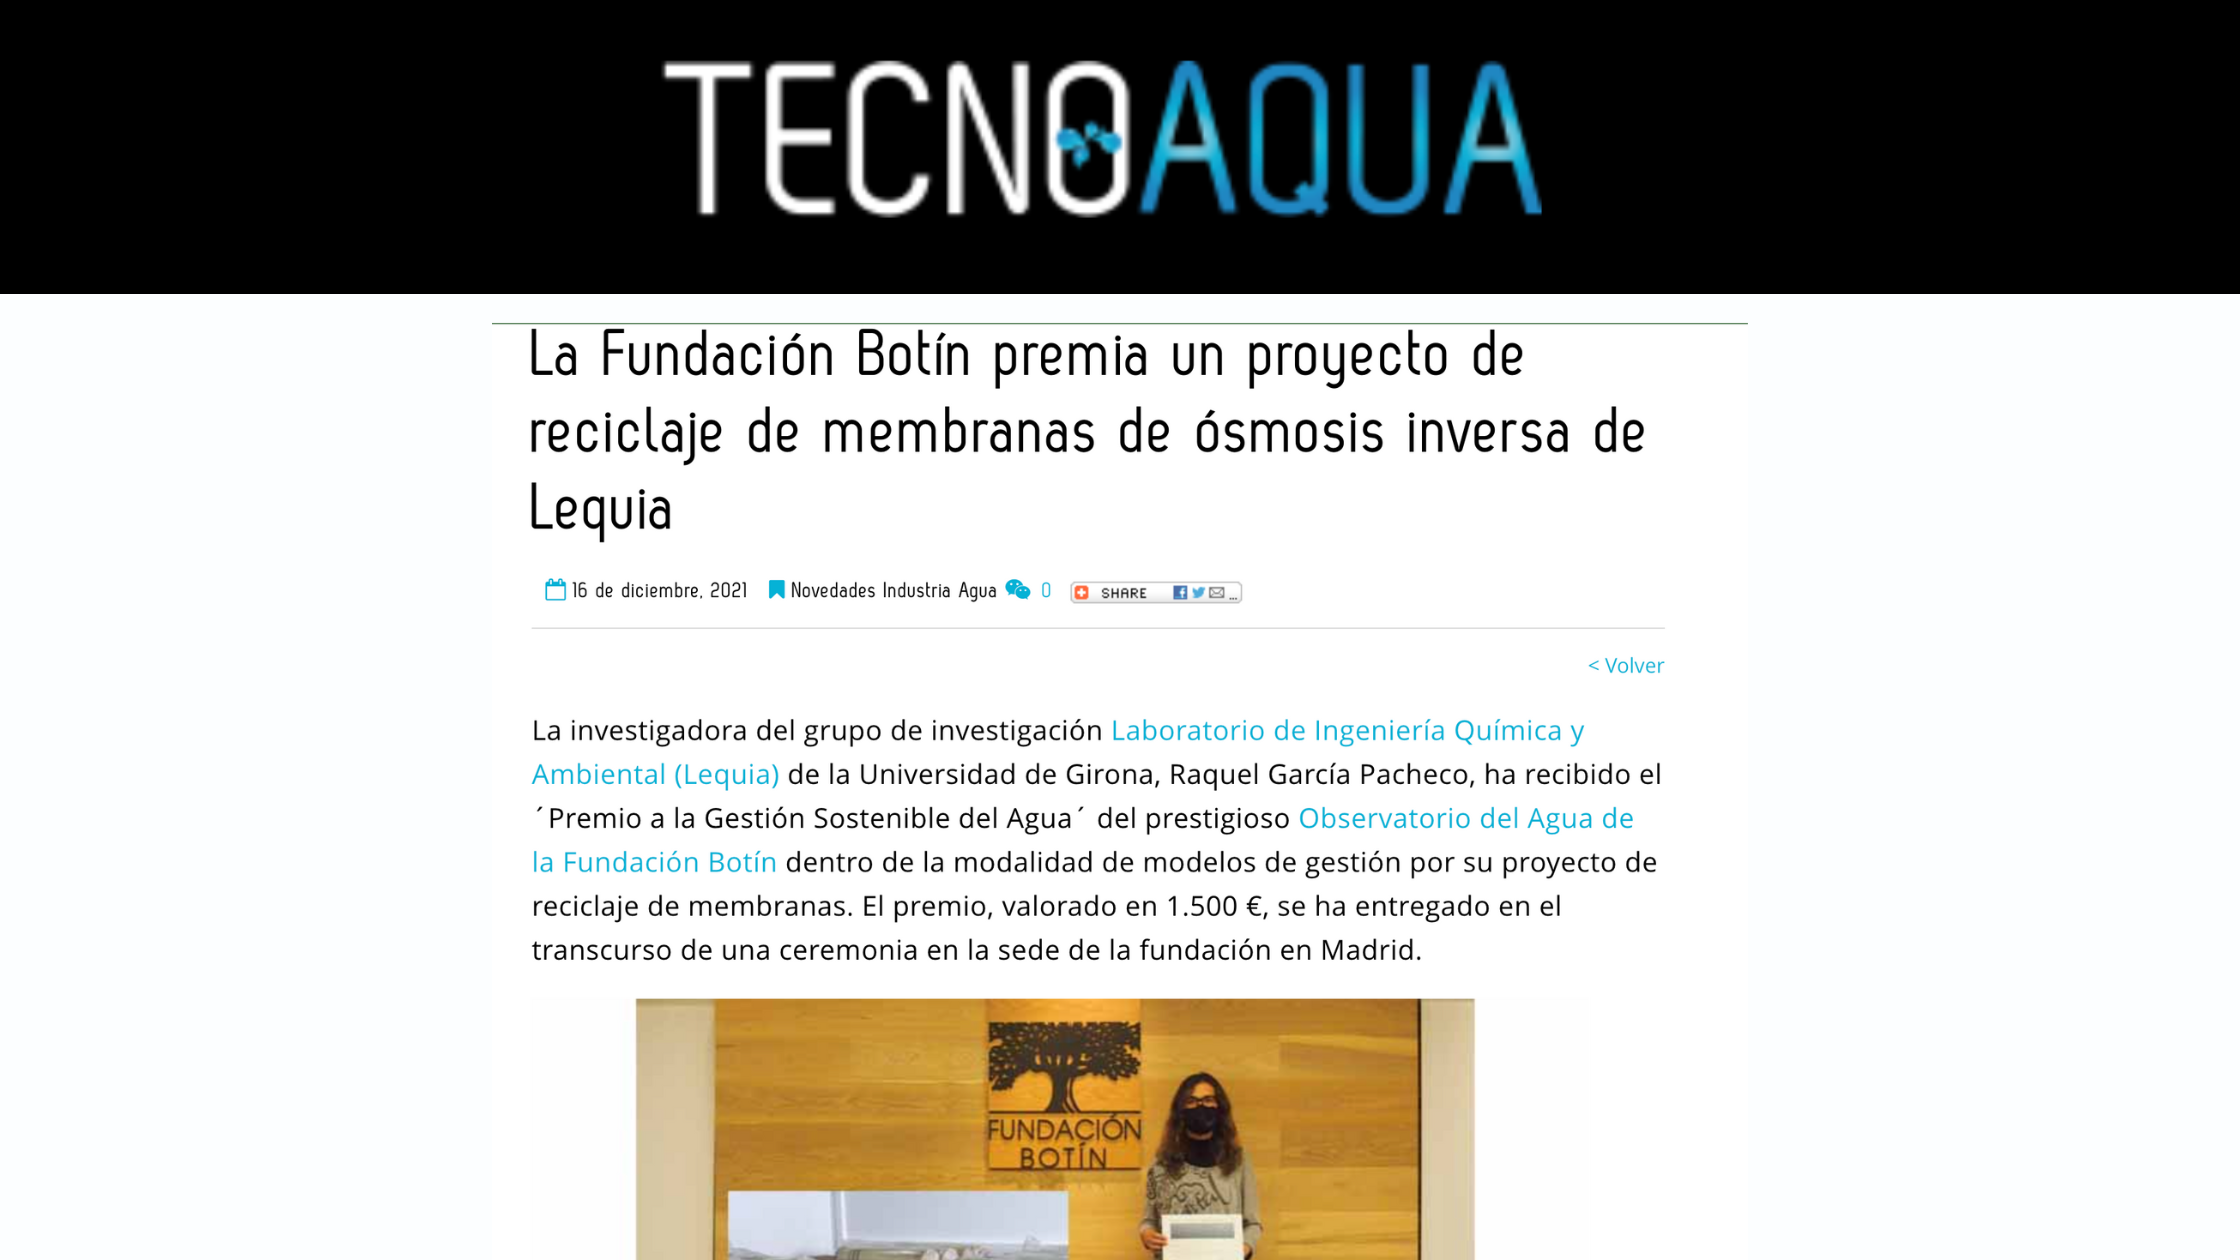 Captura noticia premio fundación botín en TECNOAGUA